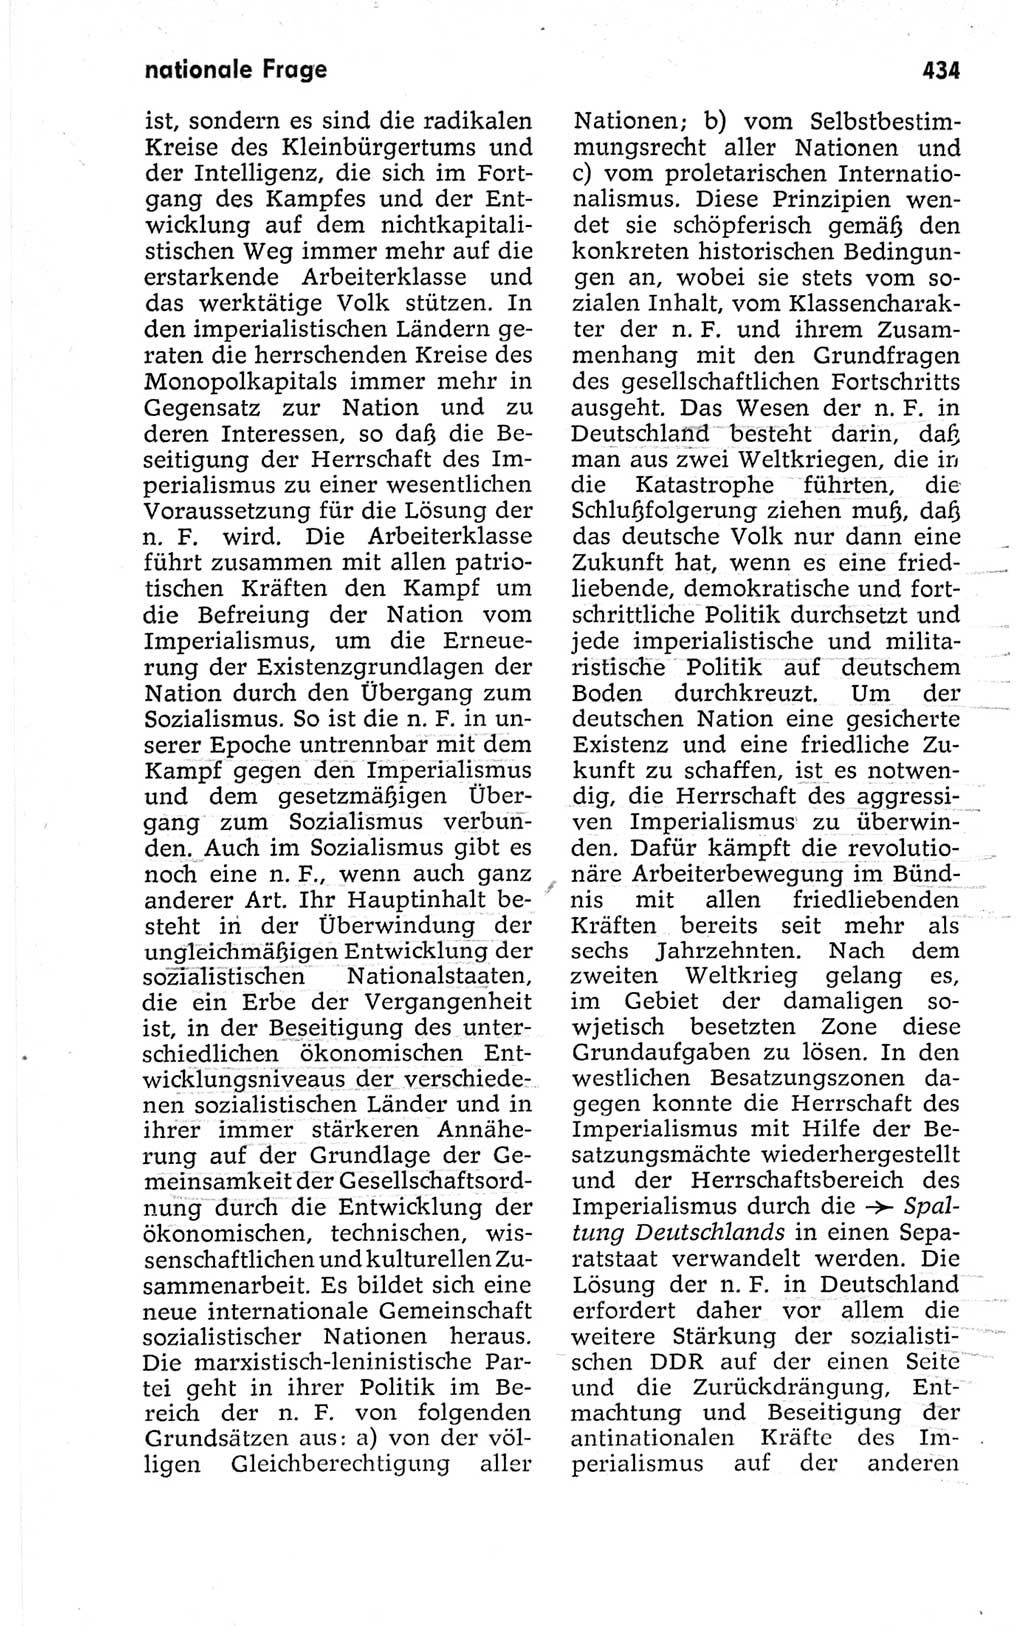 Kleines politisches Wörterbuch [Deutsche Demokratische Republik (DDR)] 1967, Seite 434 (Kl. pol. Wb. DDR 1967, S. 434)